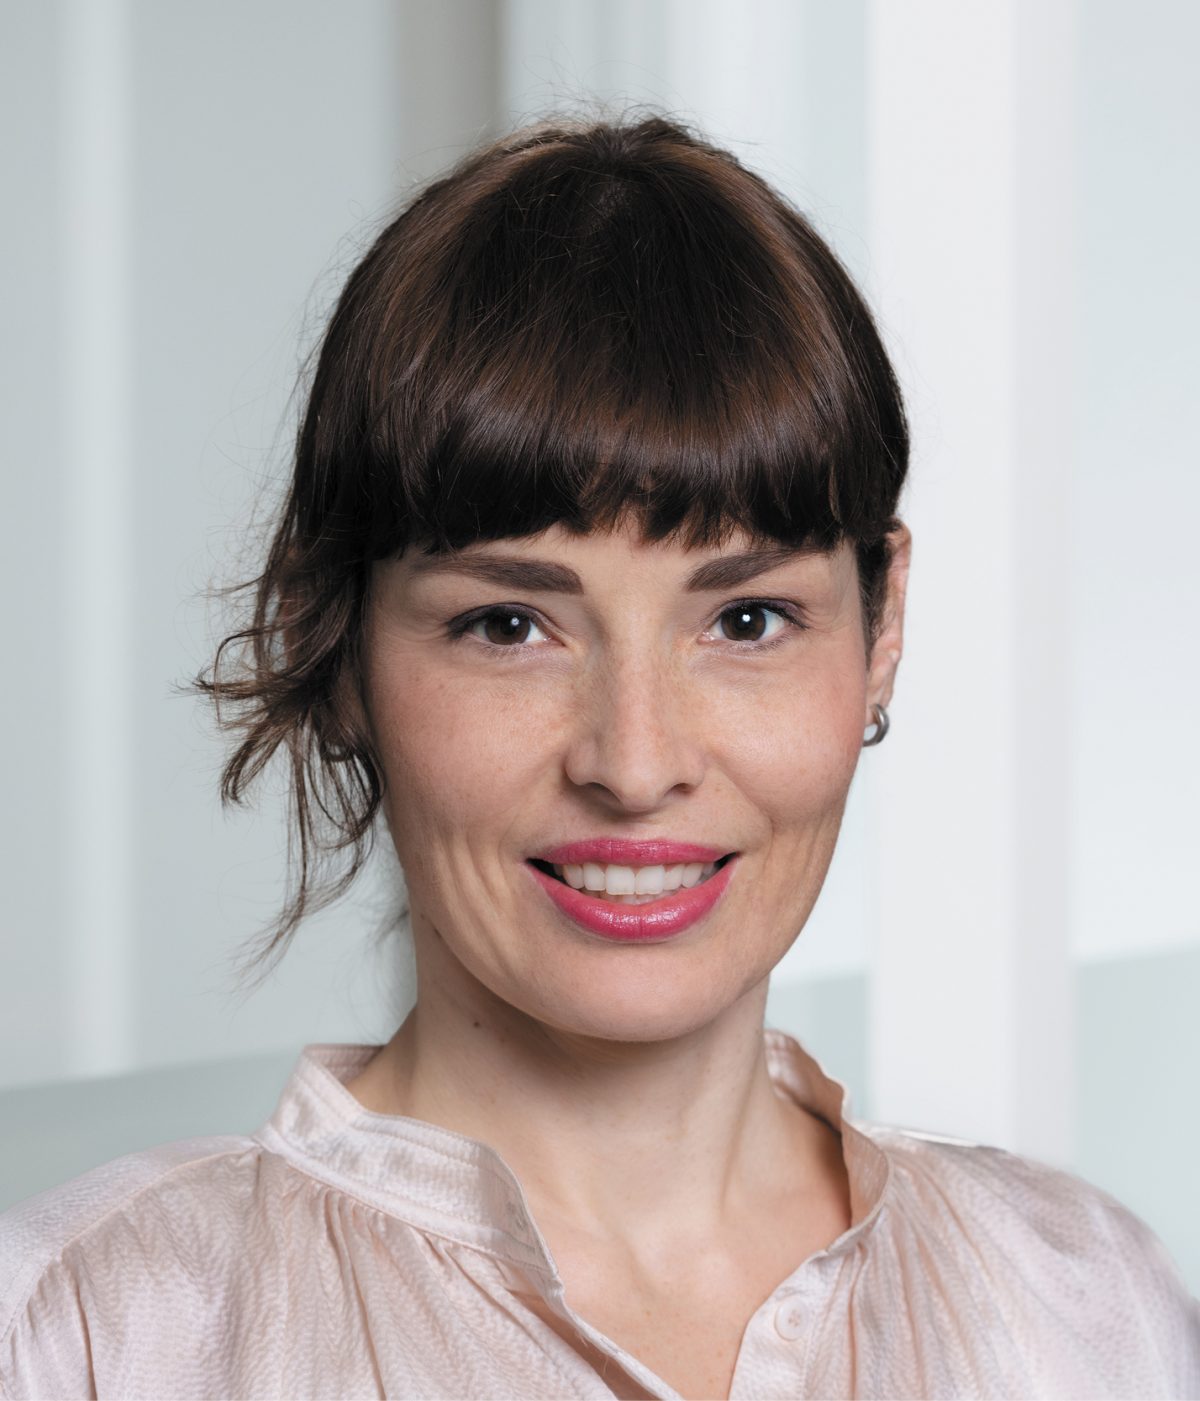 Isabelle Vloemans | ETH Zurich Foundation, Uplift magazine